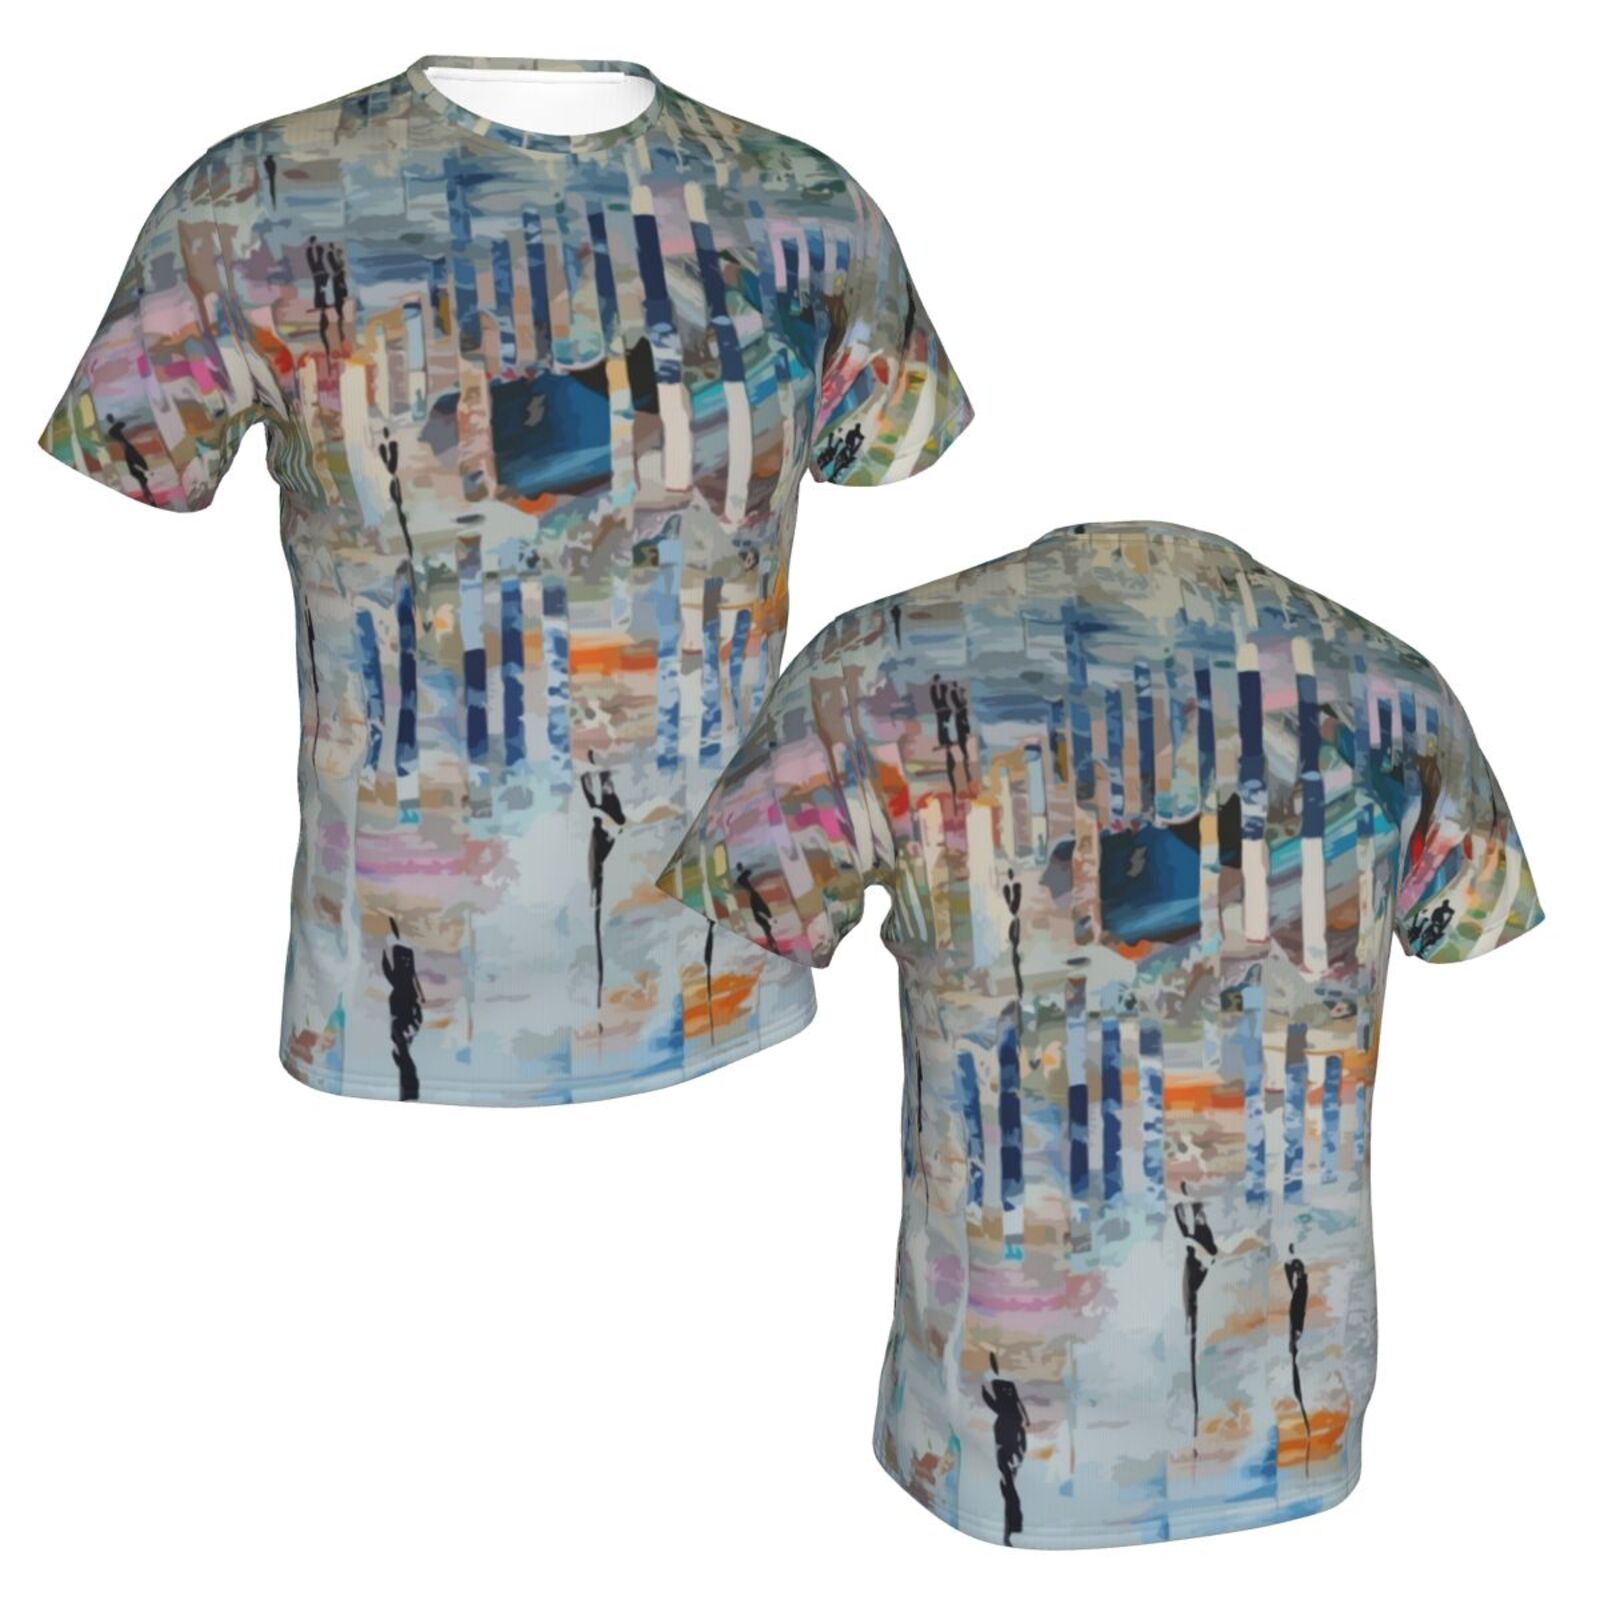 T-shirt Suisse Classique D'éléments De Peinture De Marche Dans Un Monde Abstrait